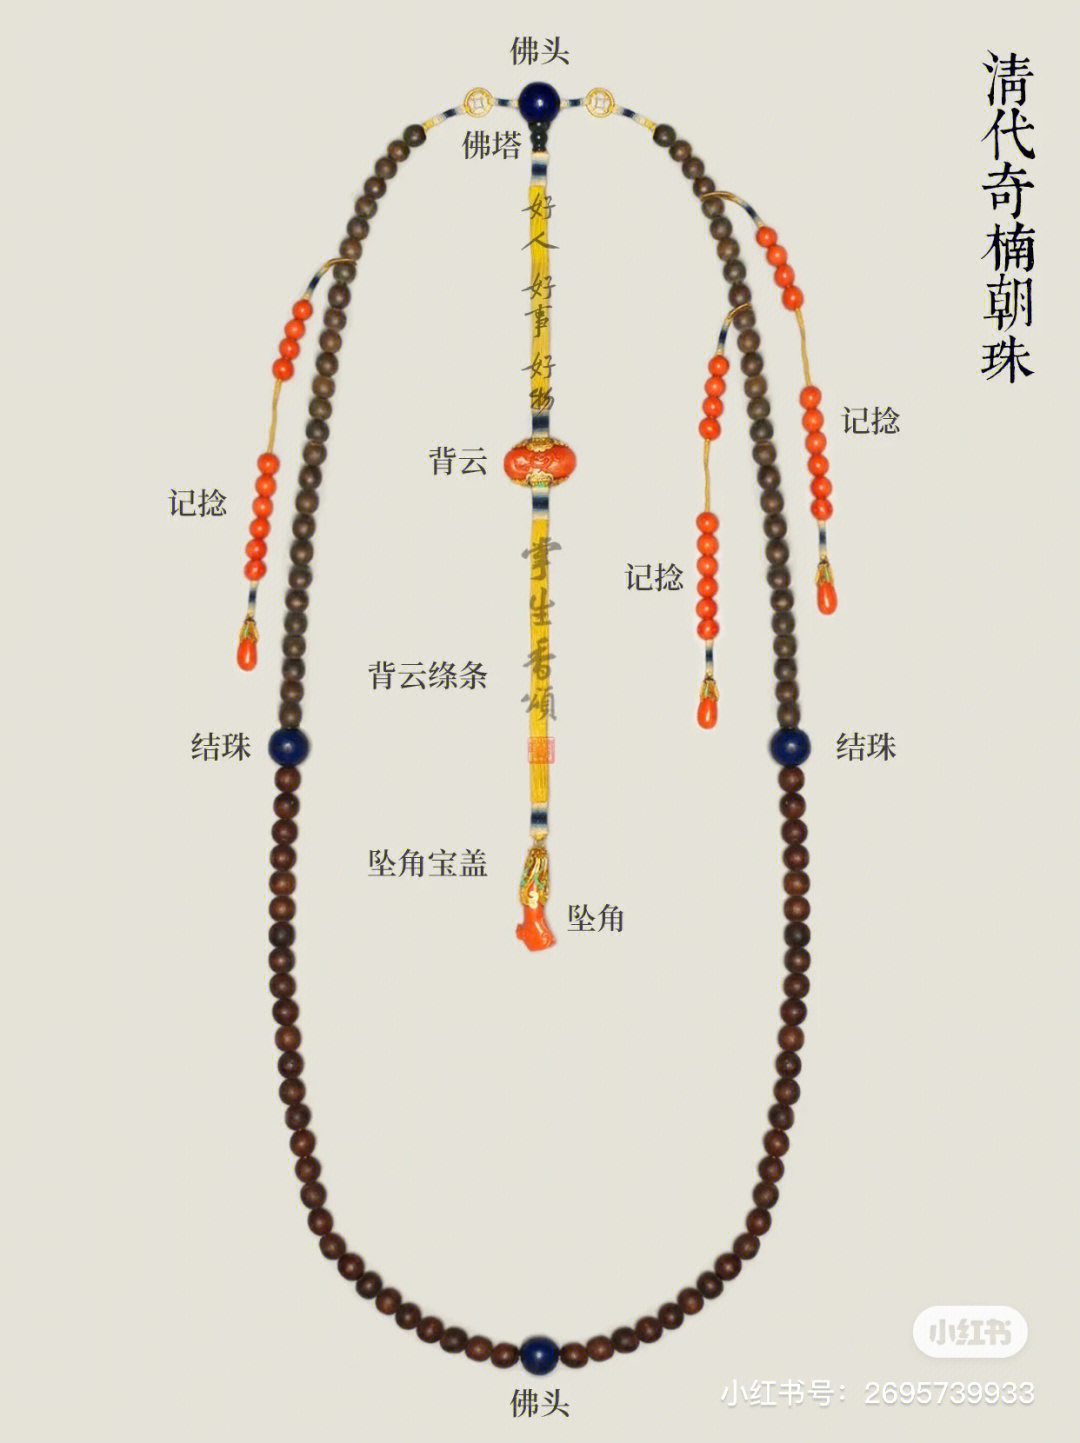 解读108奇楠朝珠的传统规制与设计搭配